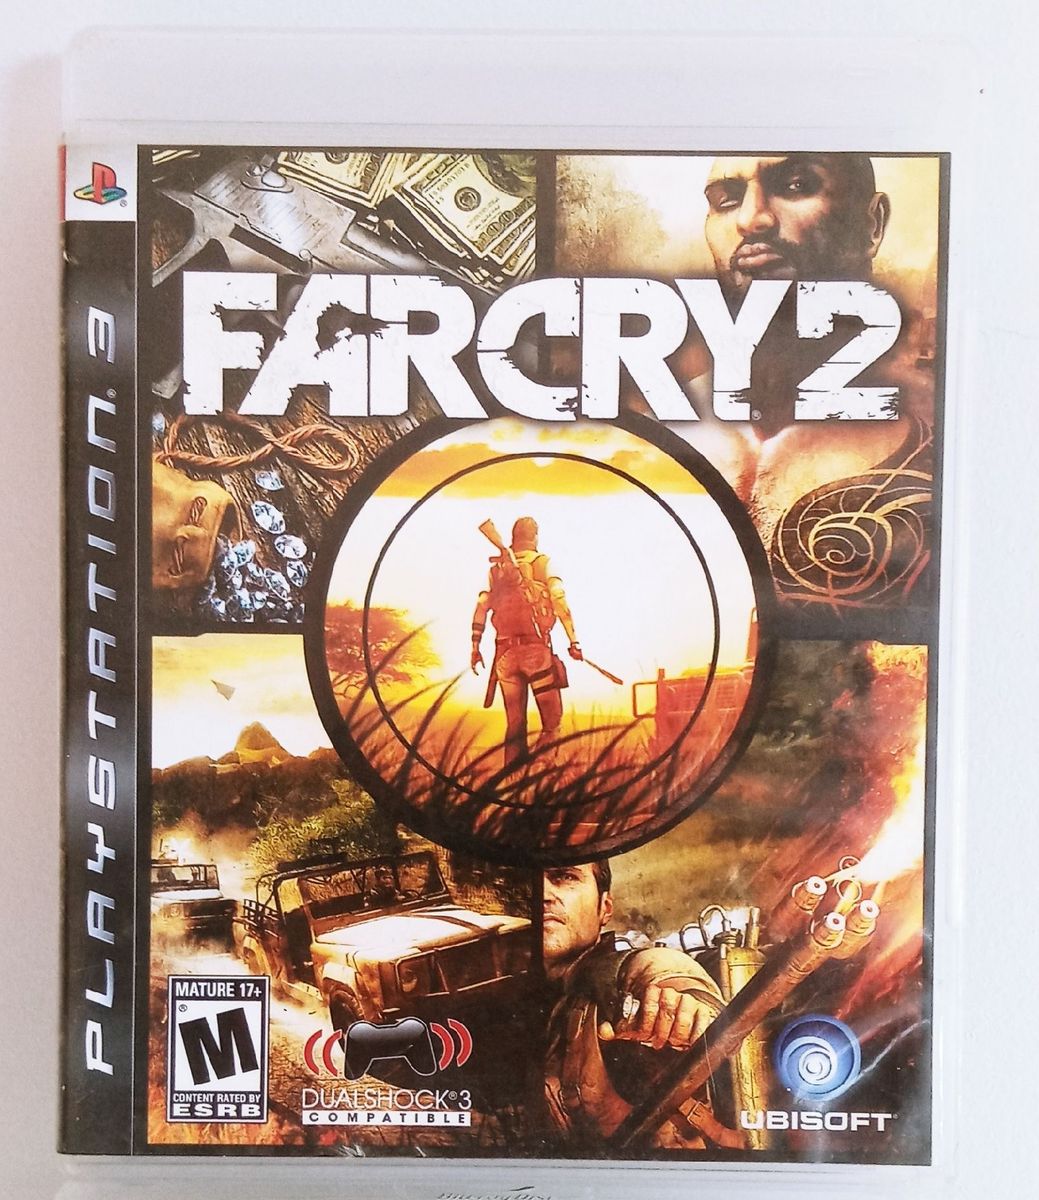 Farcry 2 Ps3 - Mídia Física Original | Jogo de Videogame Ps3 Usado 69606331  | enjoei